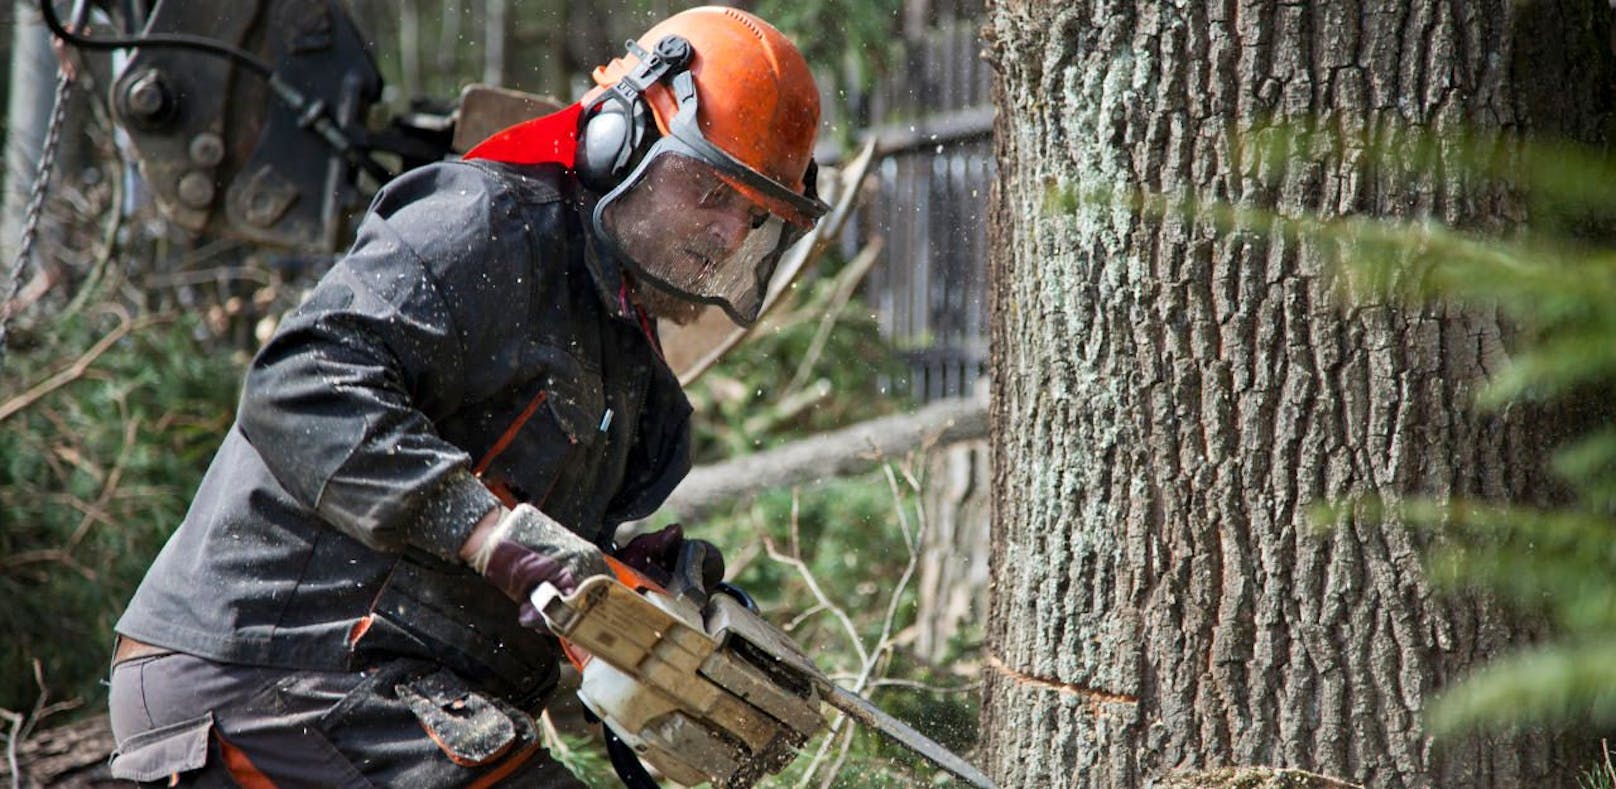 Bei Holzarbeiten: Landwirt von Baum getroffen